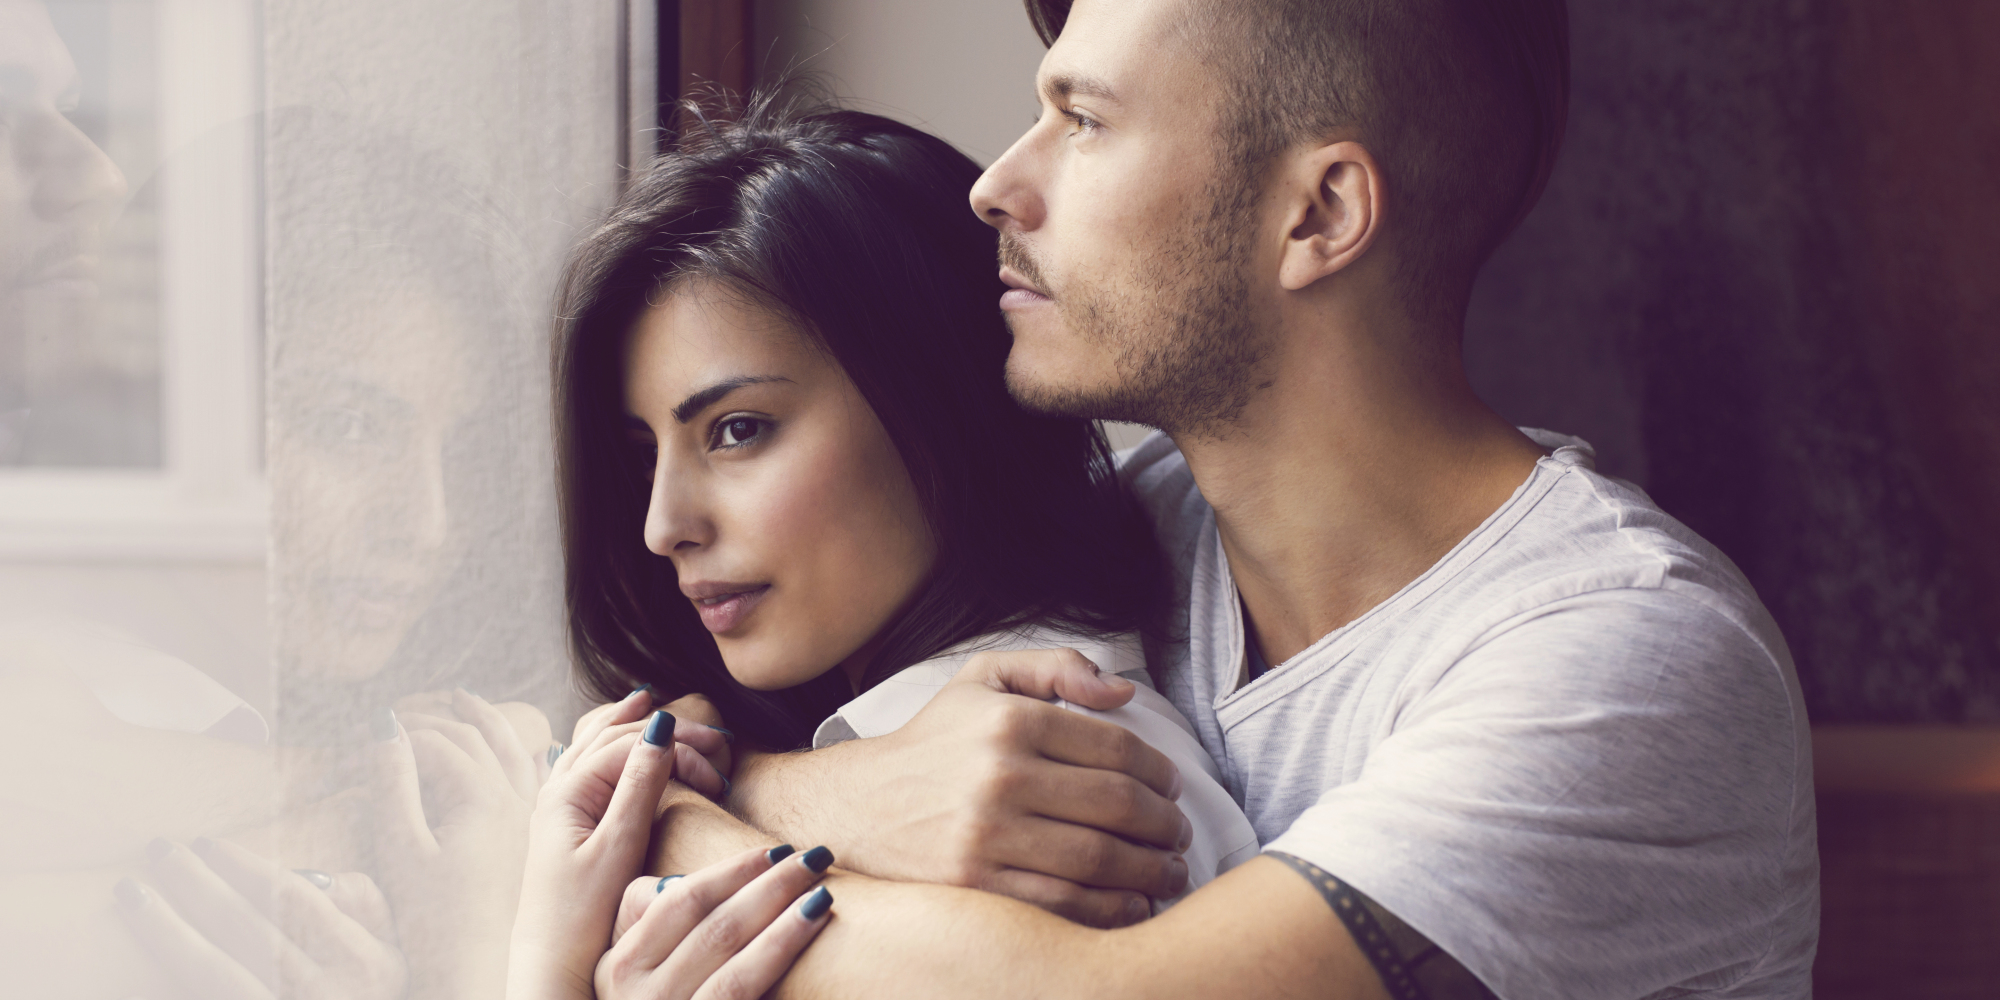 أفصِح عن رغباتك الجنسية ونزواتك الخيالية 6 نقاشات مع شريكك لأجل علاقة أفضل